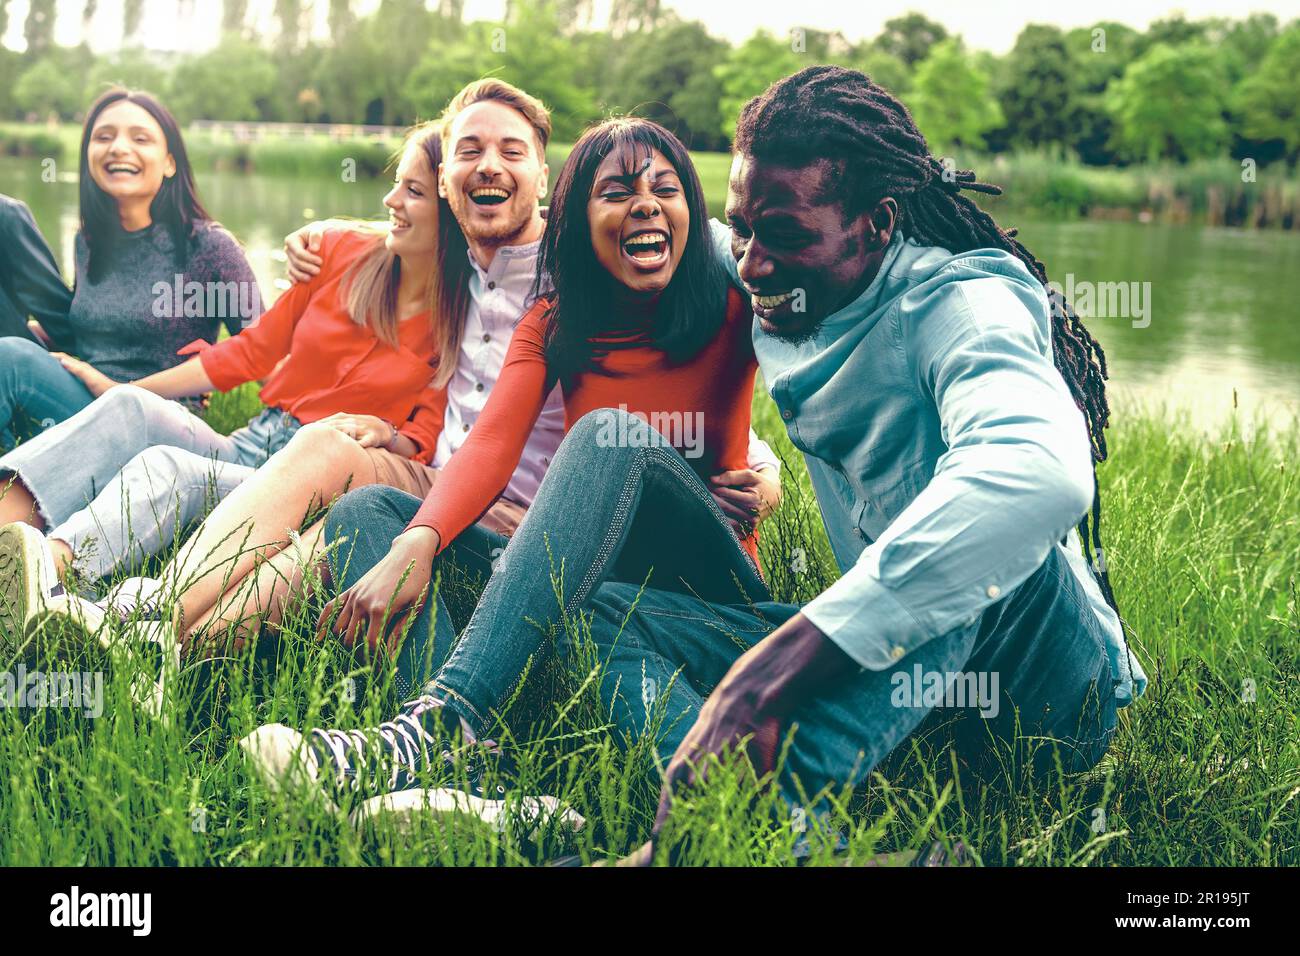 Eine Gruppe verschiedener junger Leute, die lachen und sich unterhalten, während sie auf dem Gras in einem Park in der Nähe eines Sees sitzen und Frühlings-/Sommerkleidung und emb tragen Stockfoto